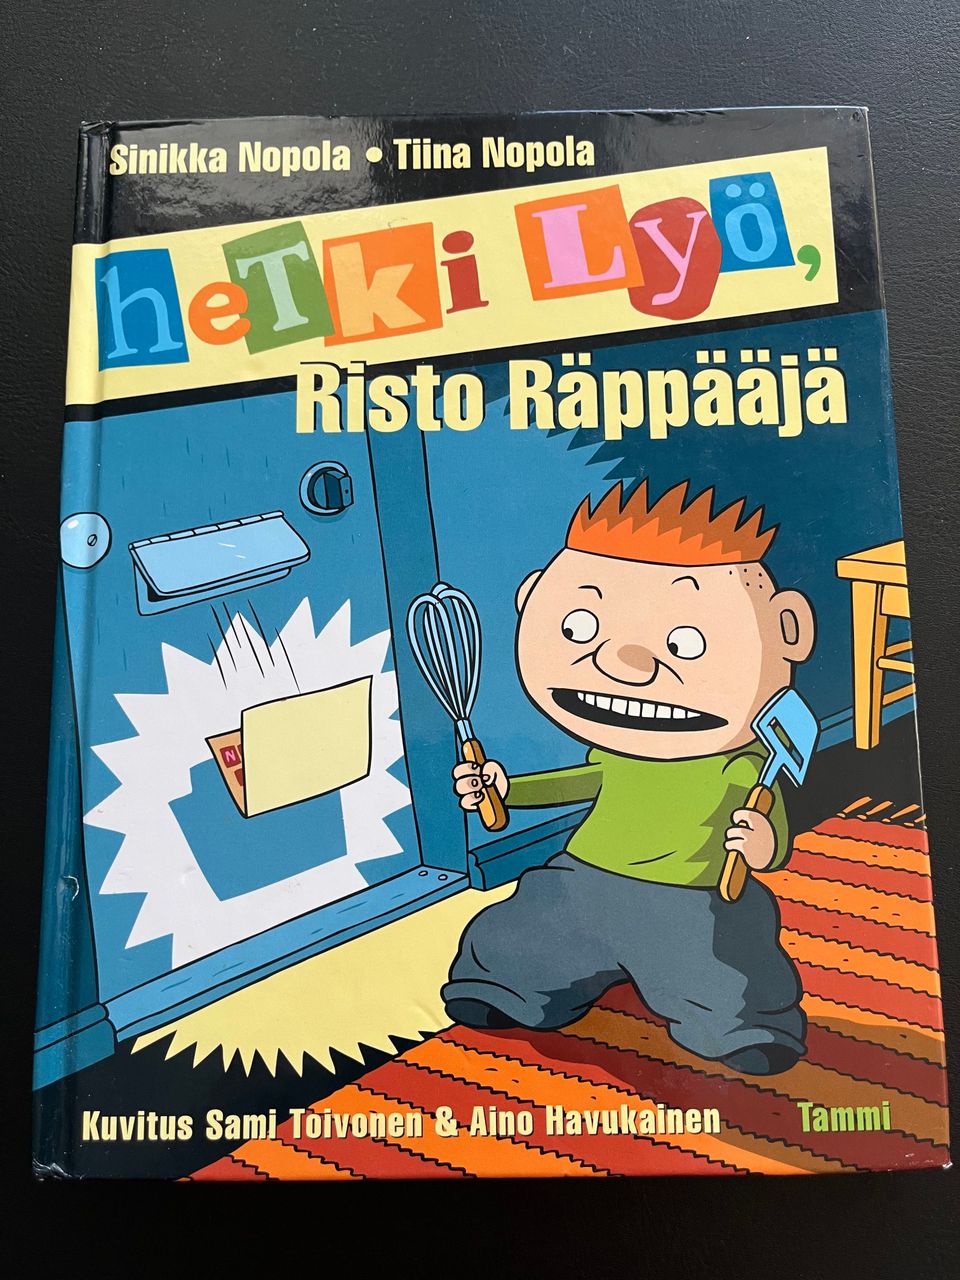 Hetki lyö, Risto Räppääjä